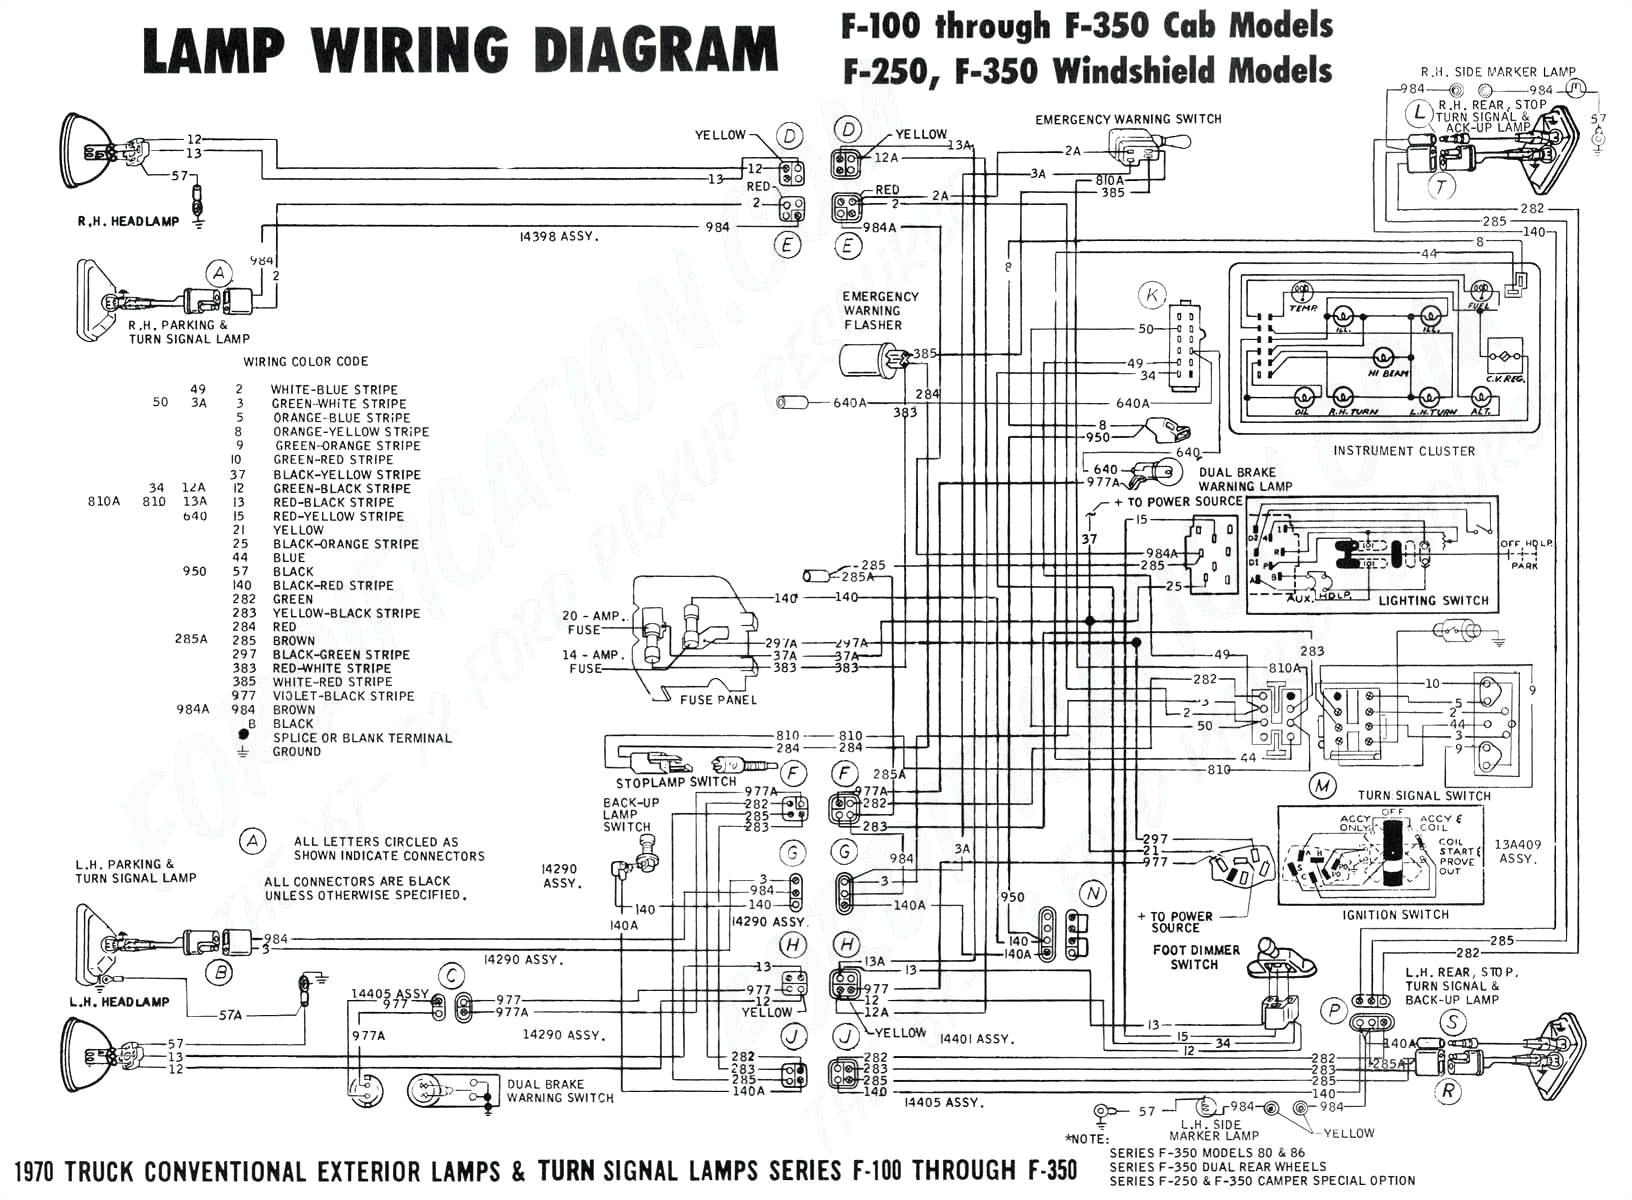 heating wiring diagram free download wiring diagram schematic free download b wiring diagram